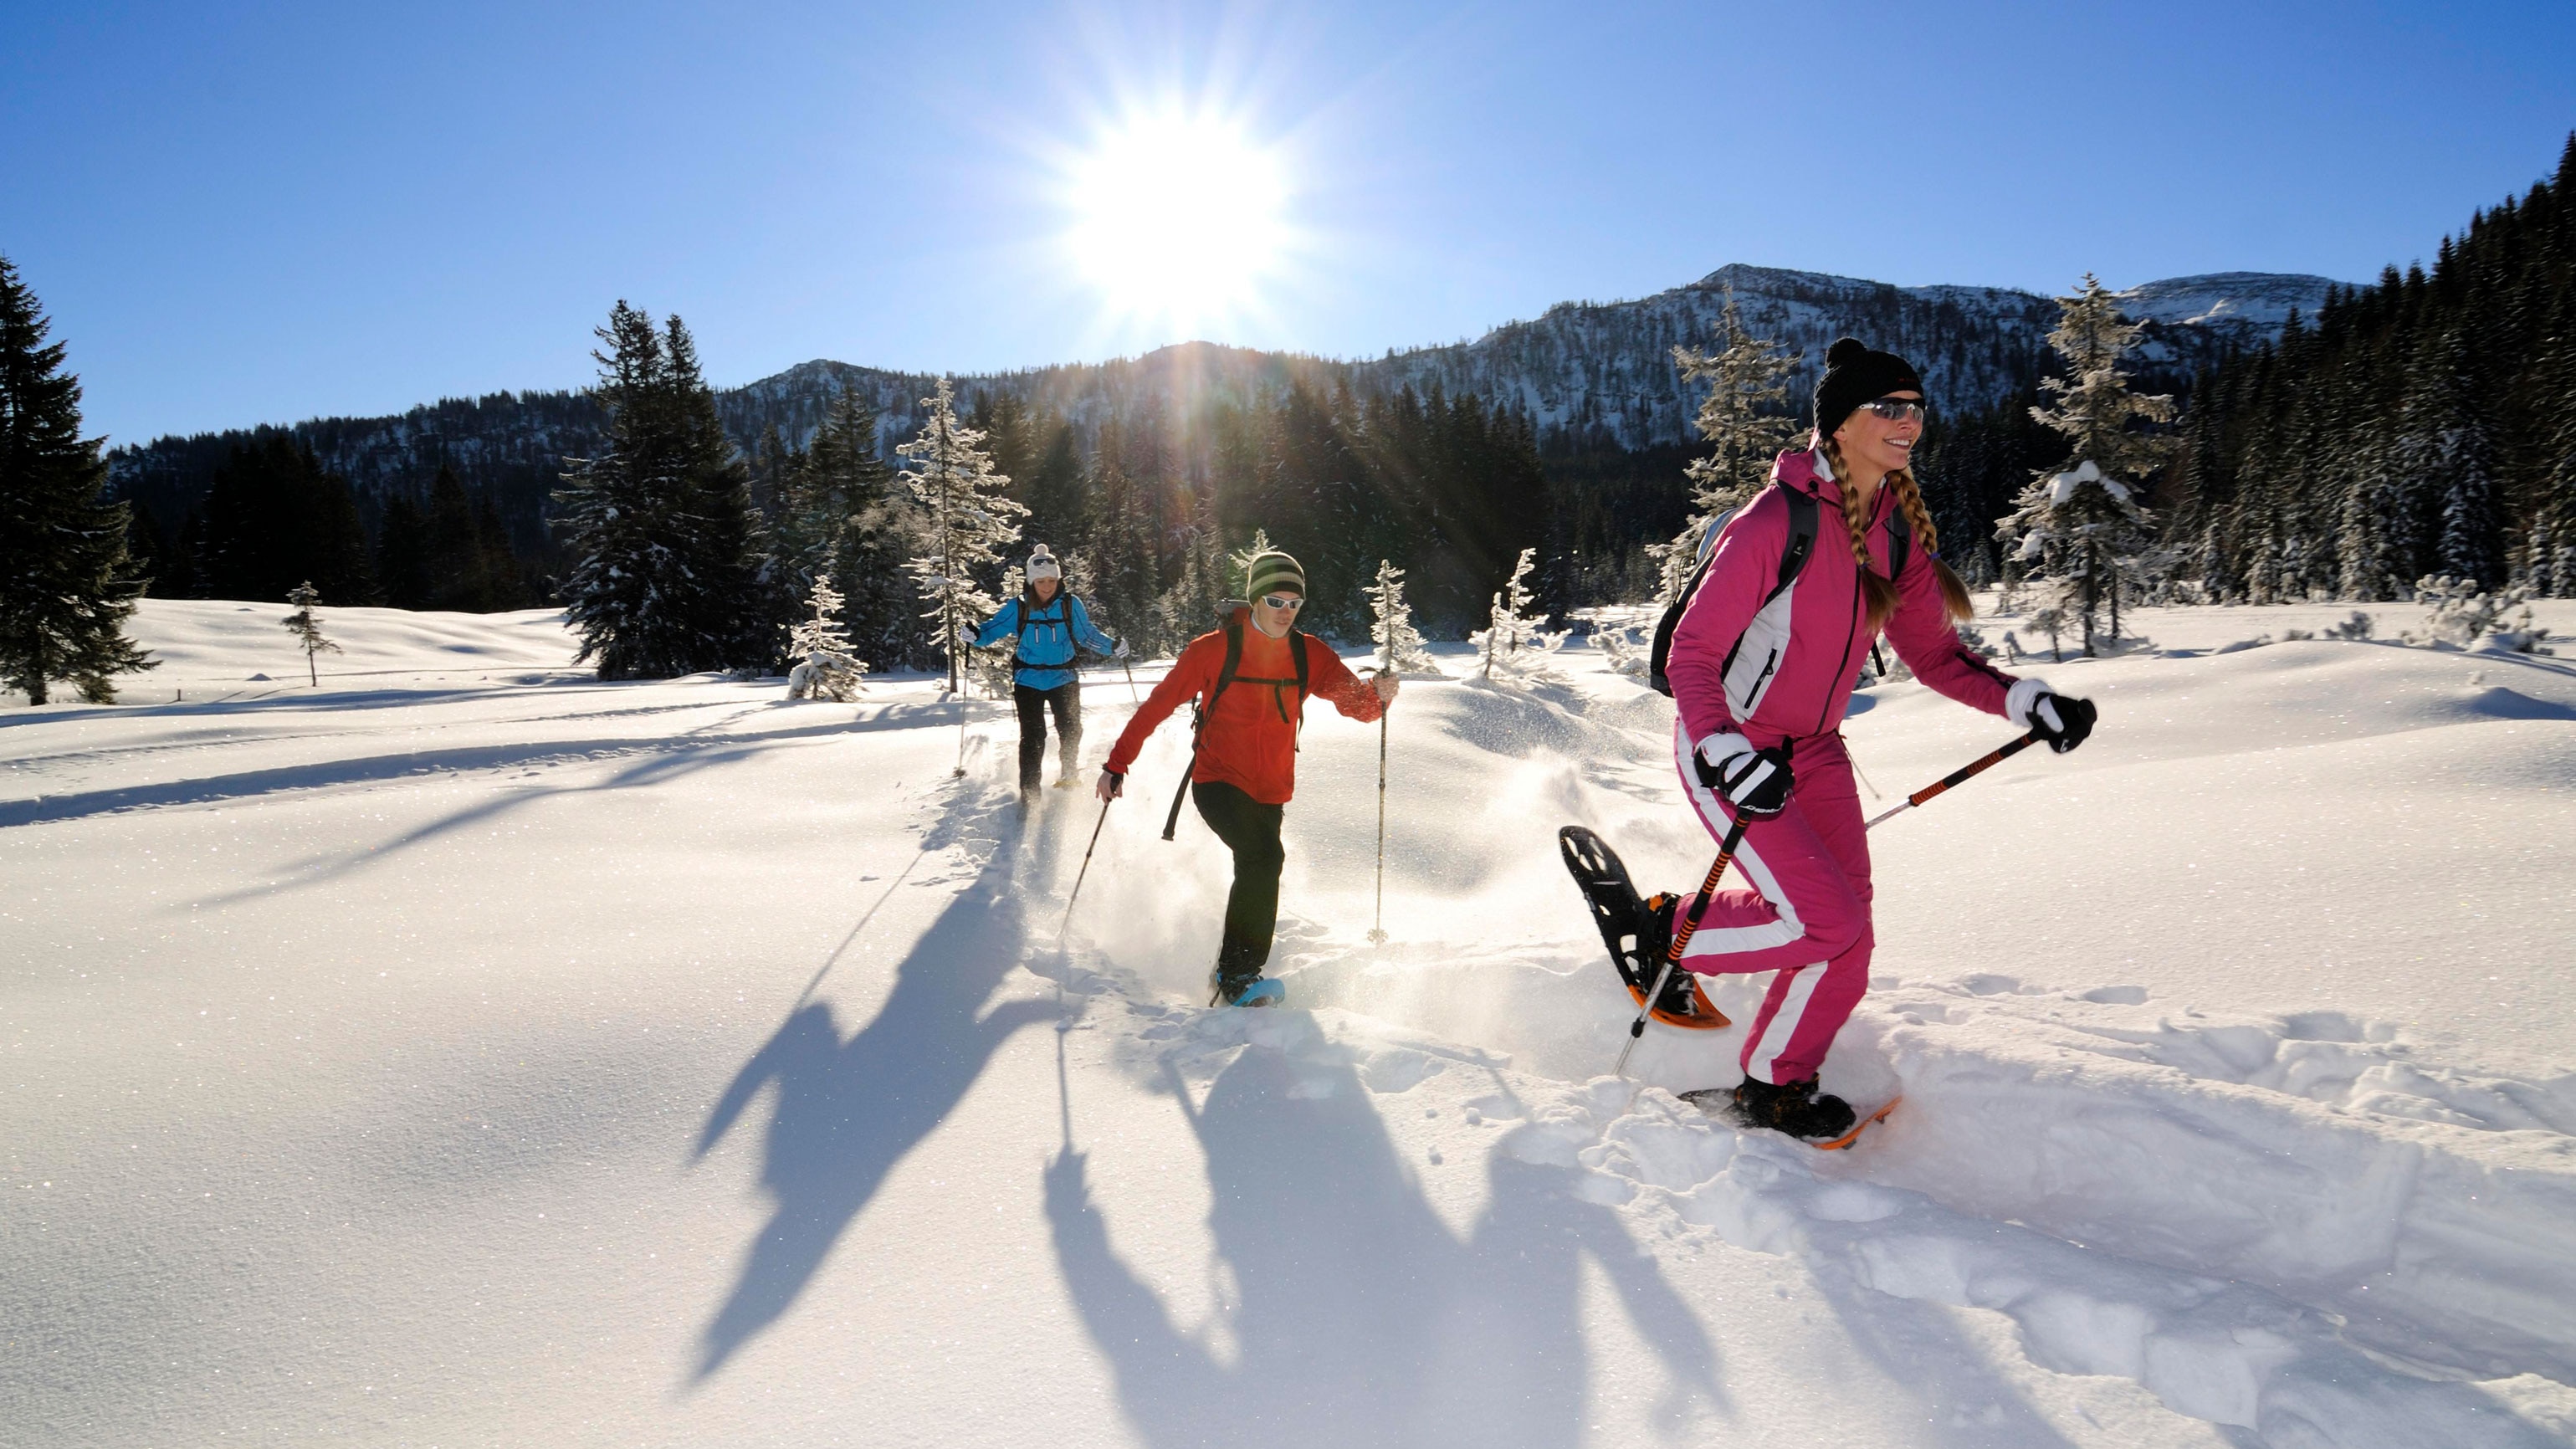 Schneeschuhwanderer bei Reit im Winkl im bayerischen Chiemgau